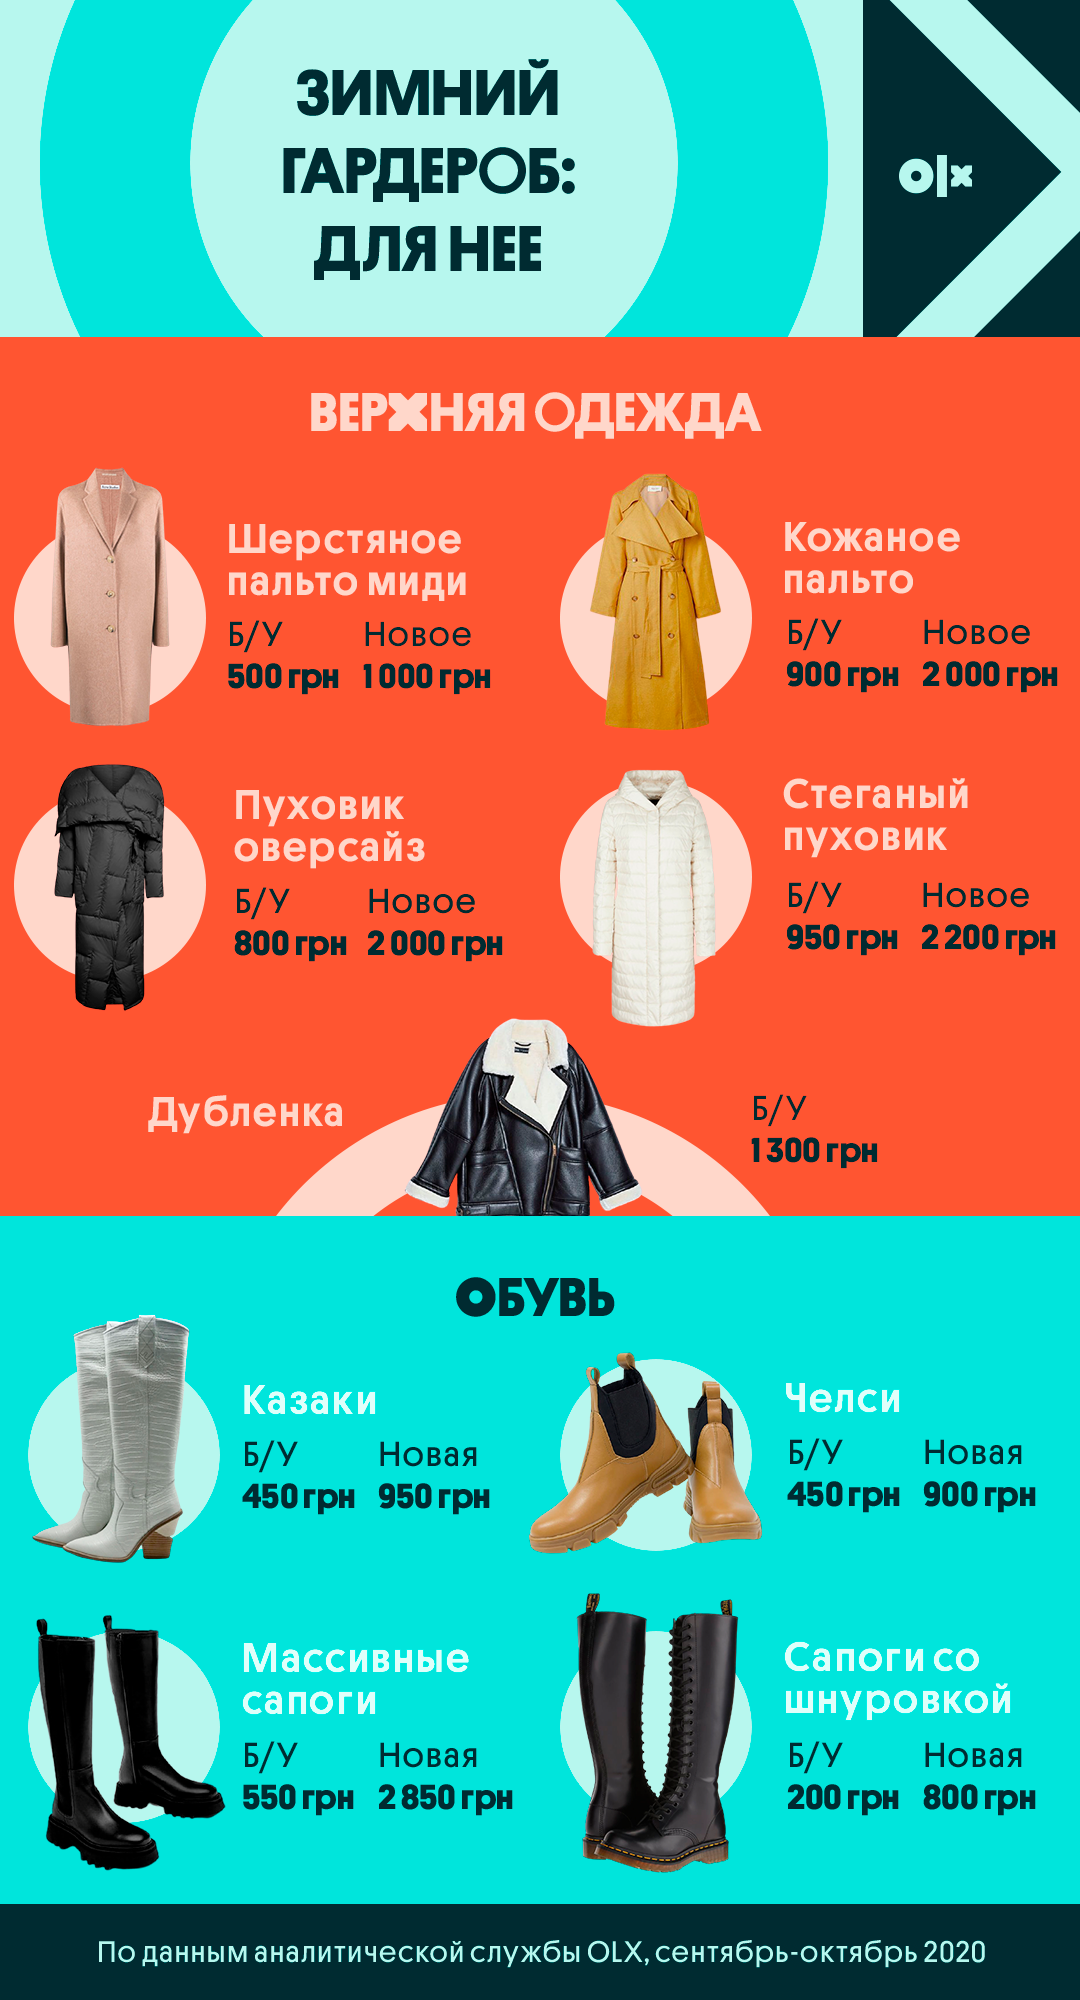 Стильный и бюджетный зимний гардероб: советы стилиста и аналитиков OLX